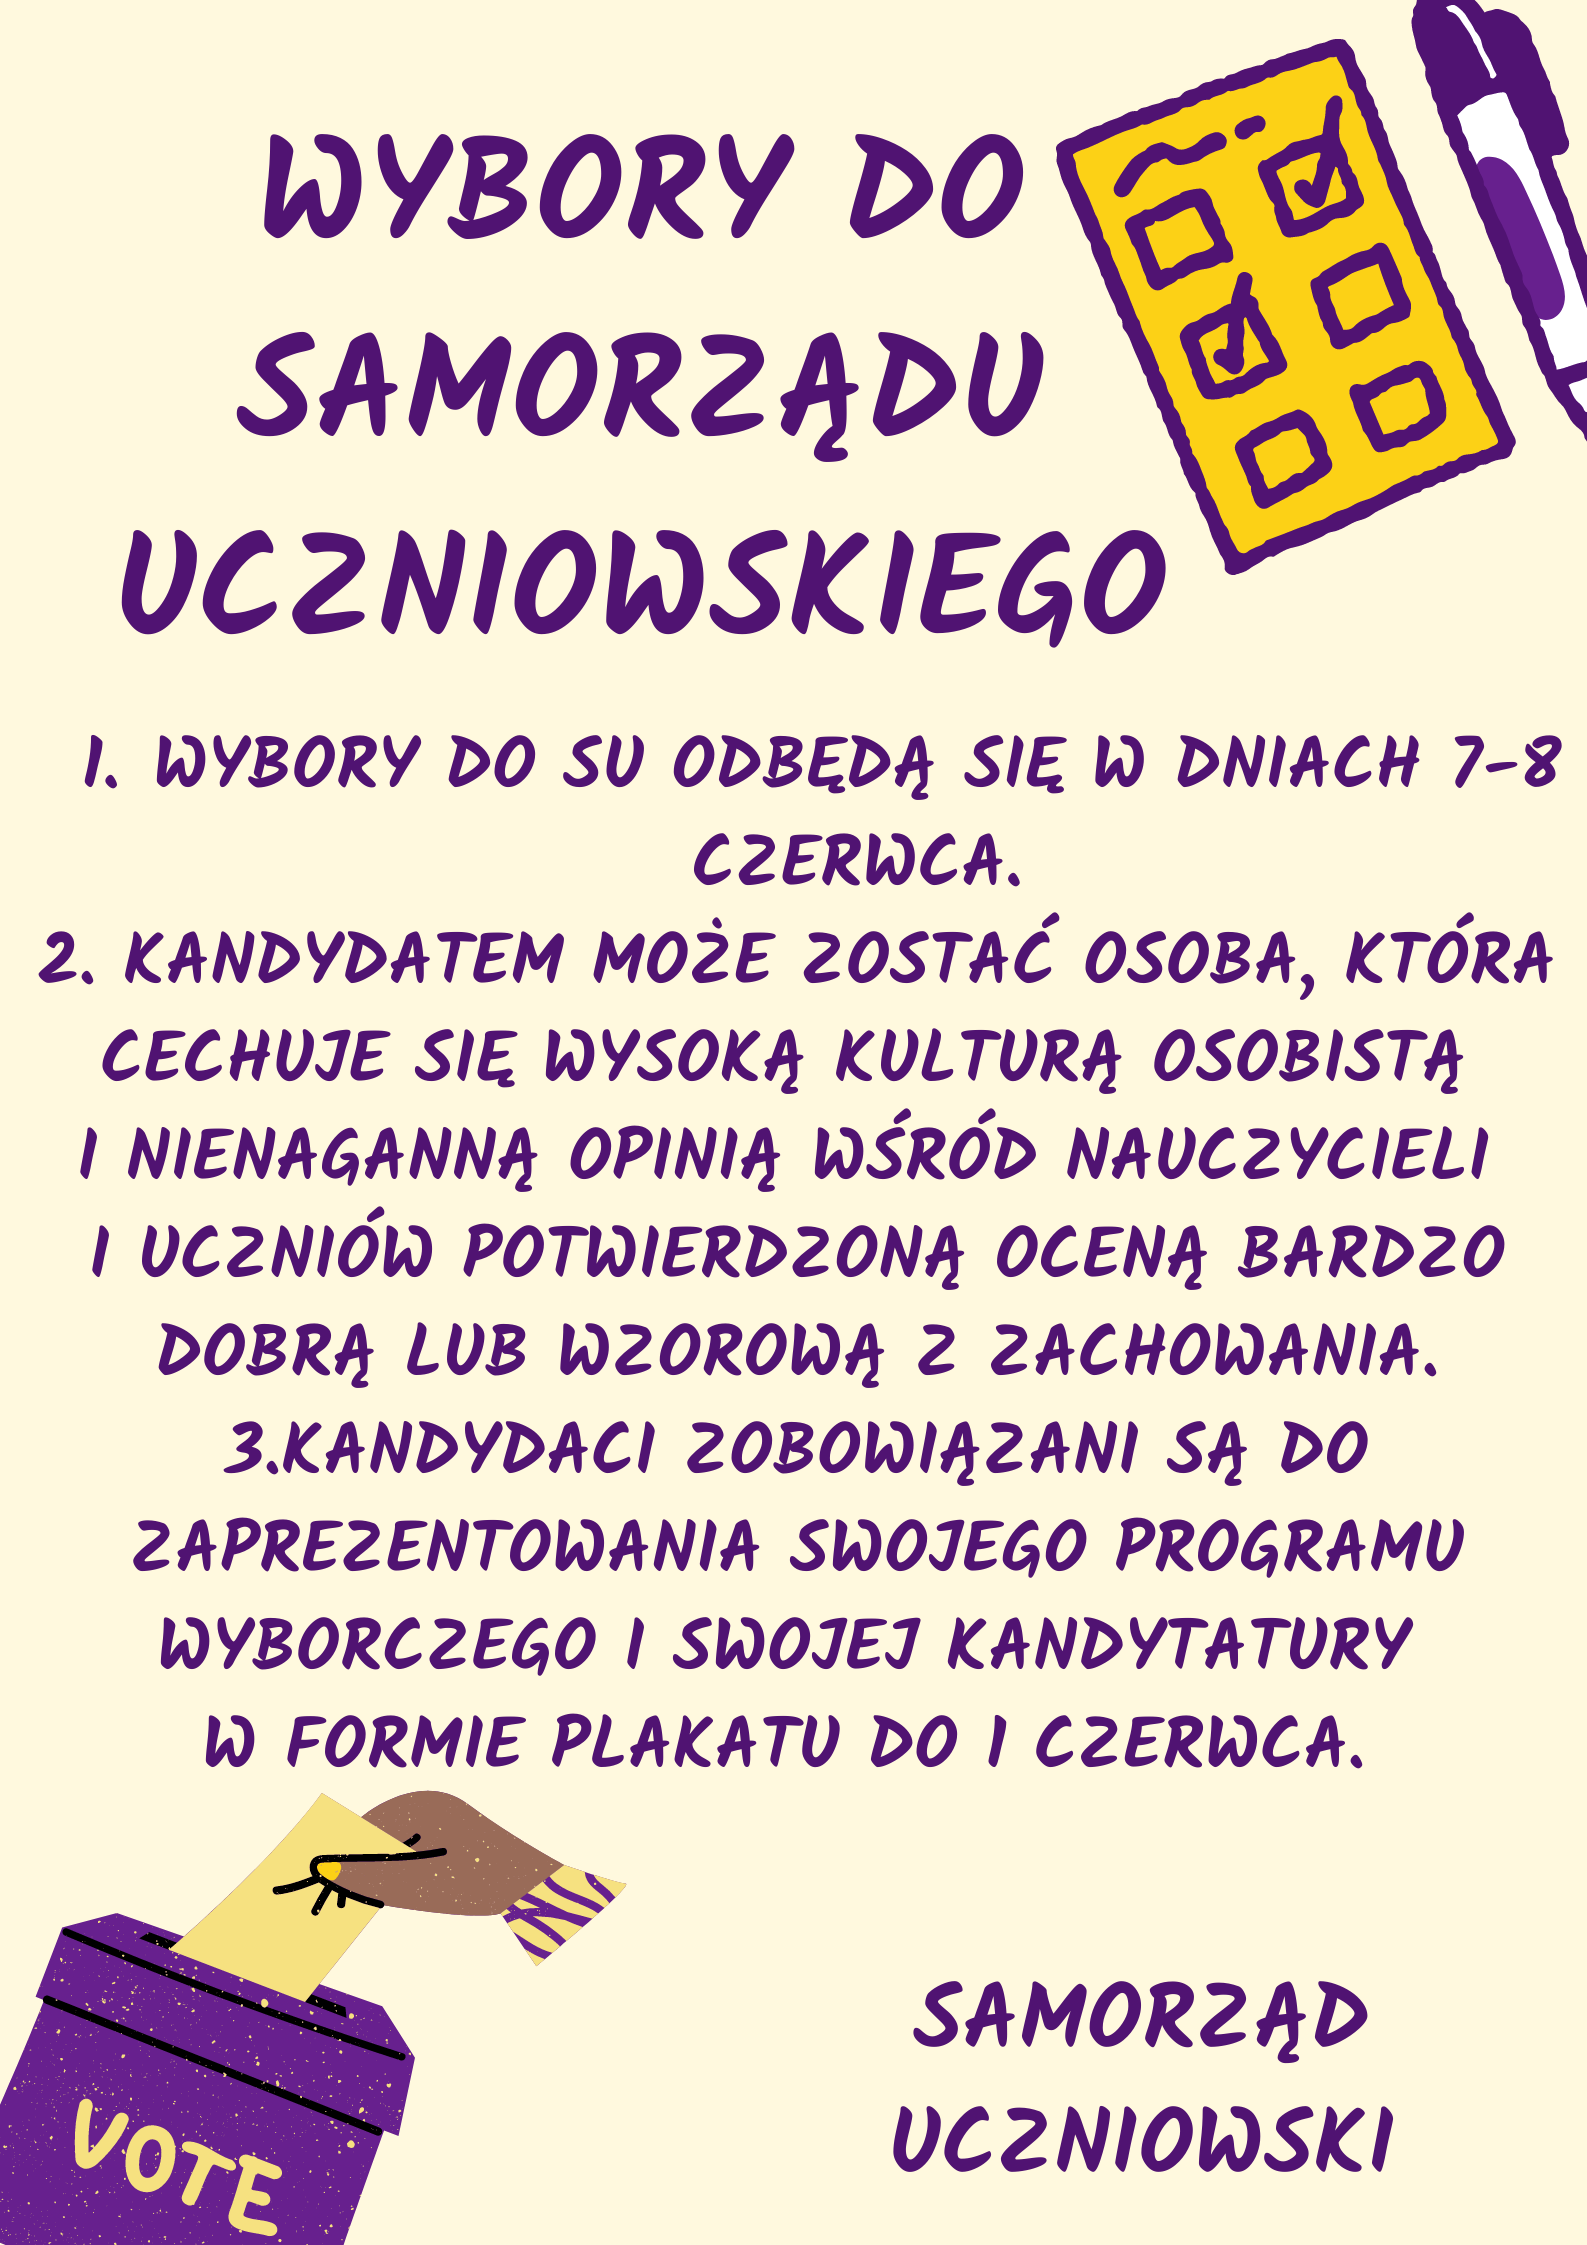 Wybory do Samorządu Uczniowskiego - plakat przedstawiający zasady, które należy spełnić.